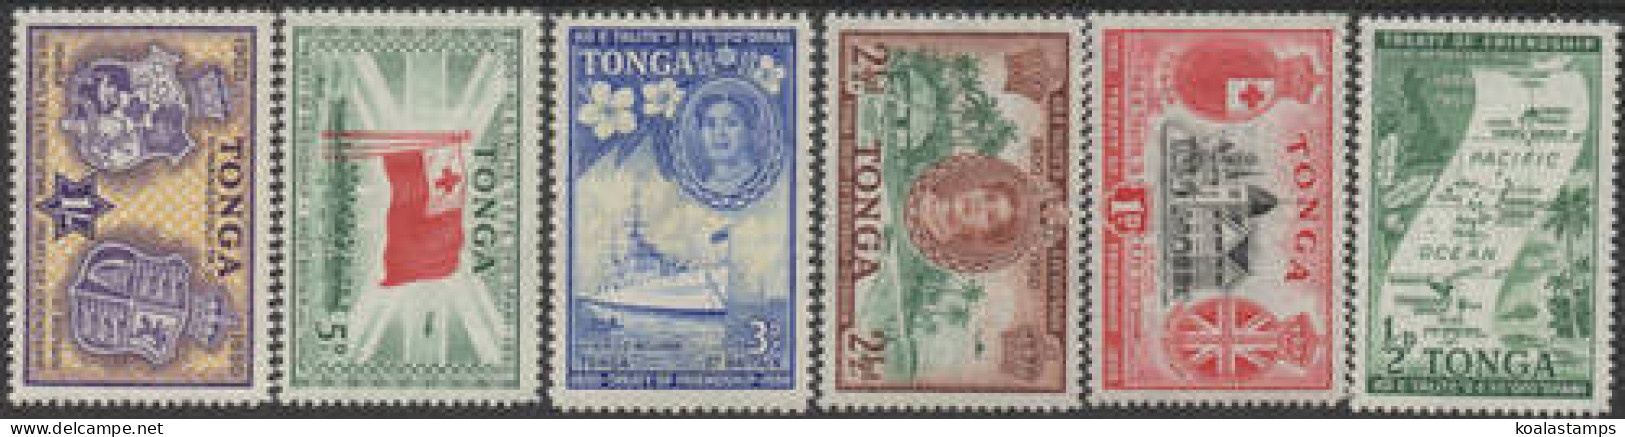 Tonga 1951 SG95-100 Treaty Of Friendship Set MNH - Tonga (1970-...)